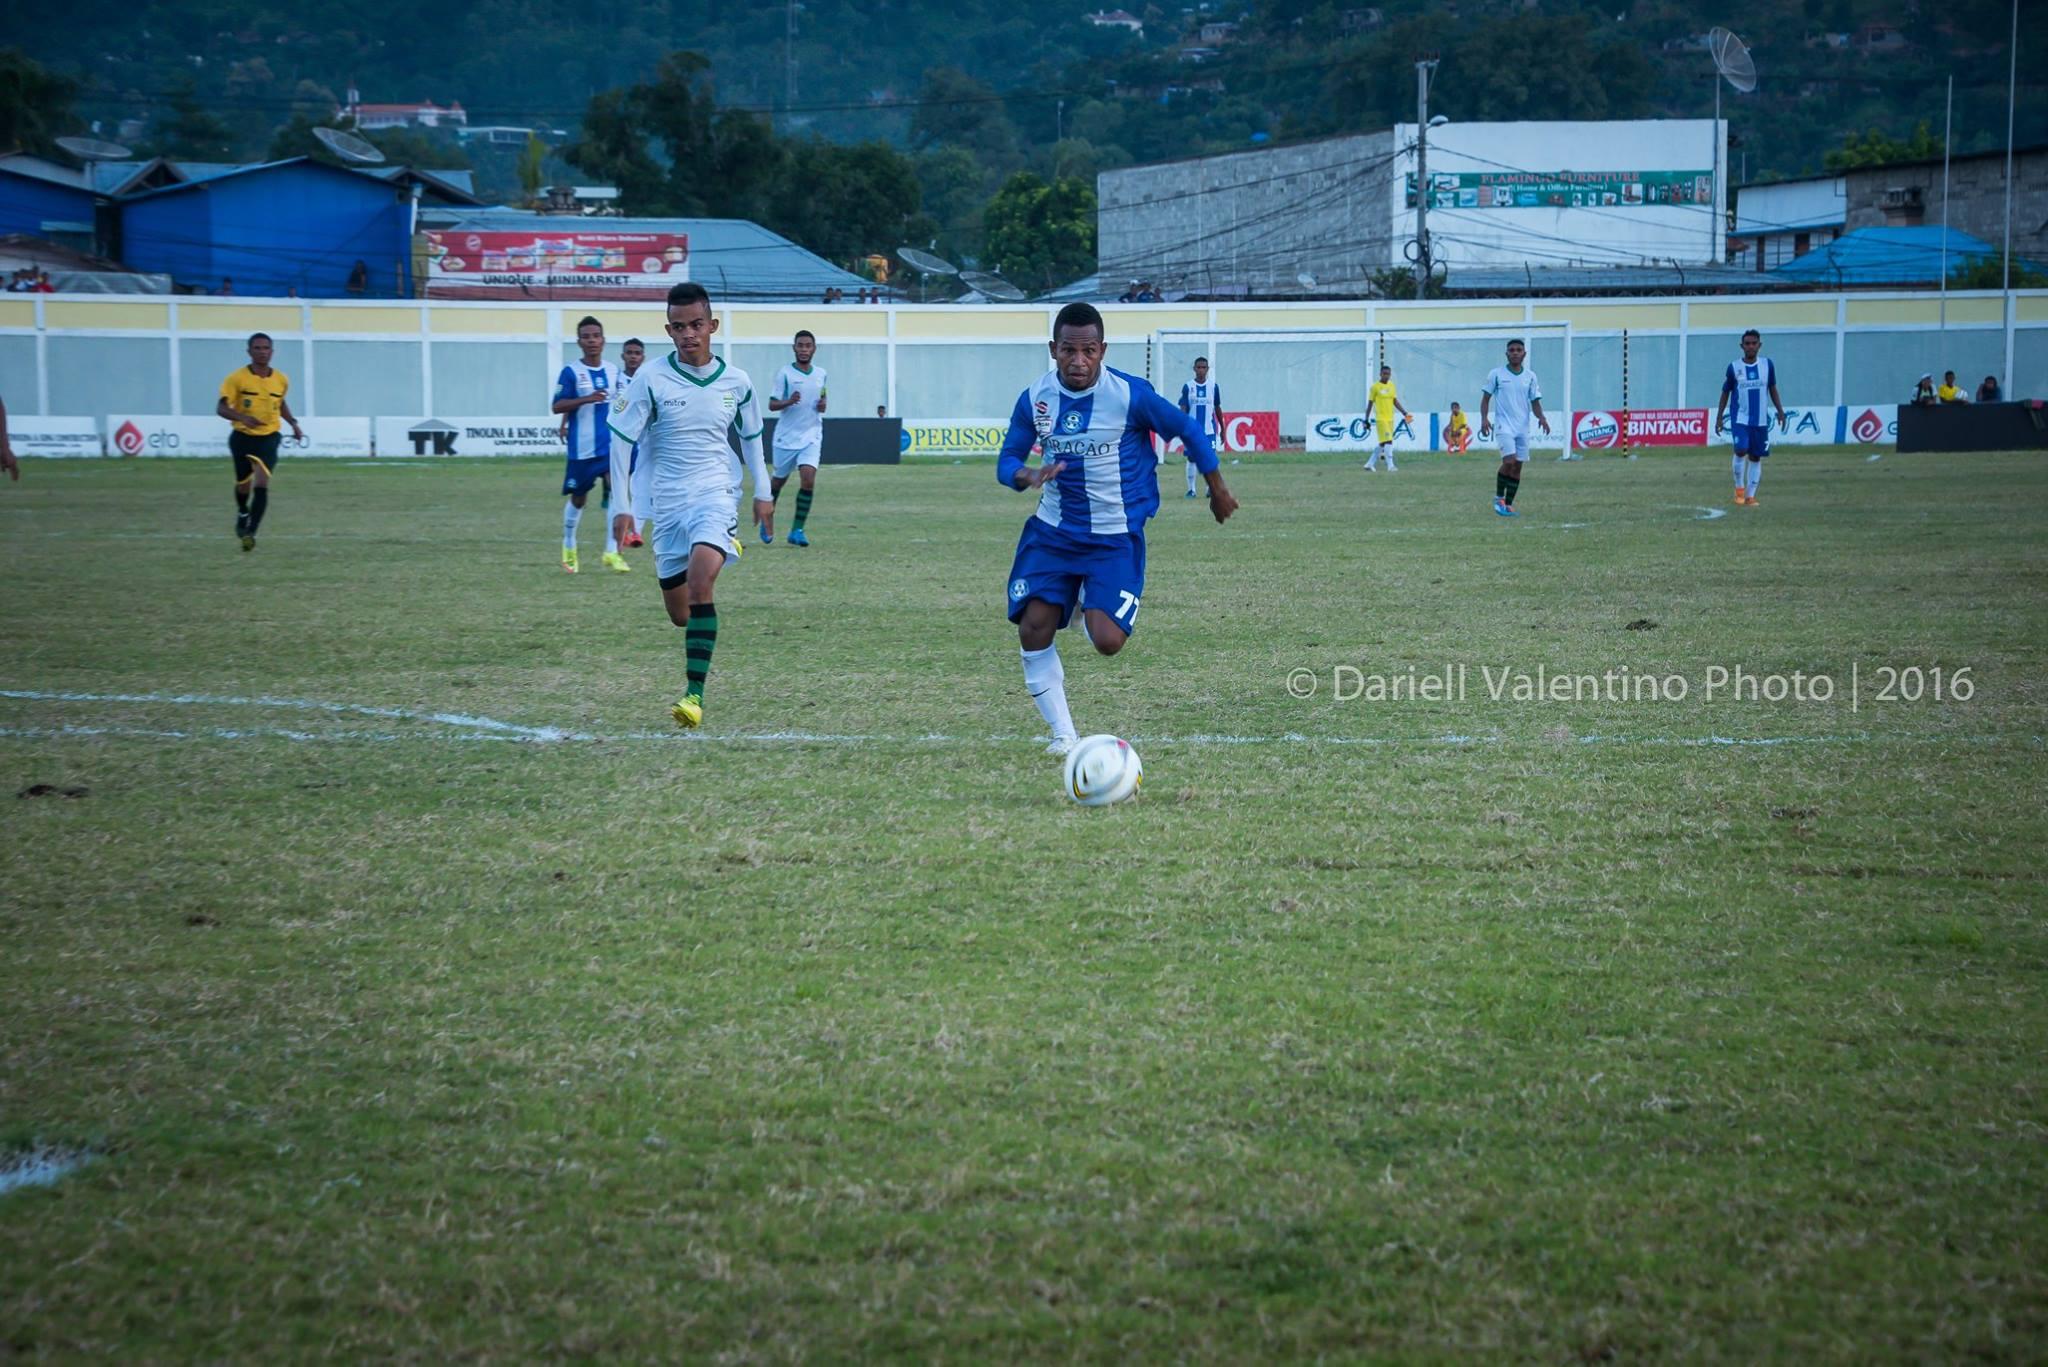 Pemain Indonesia yang bermain di Liga Timor Leste bersama Carsae FC, Oktovianus Maniani berhasil membawa timnya menang dengan skor 1-0 atas Karketu Dili FC. - INDOSPORT